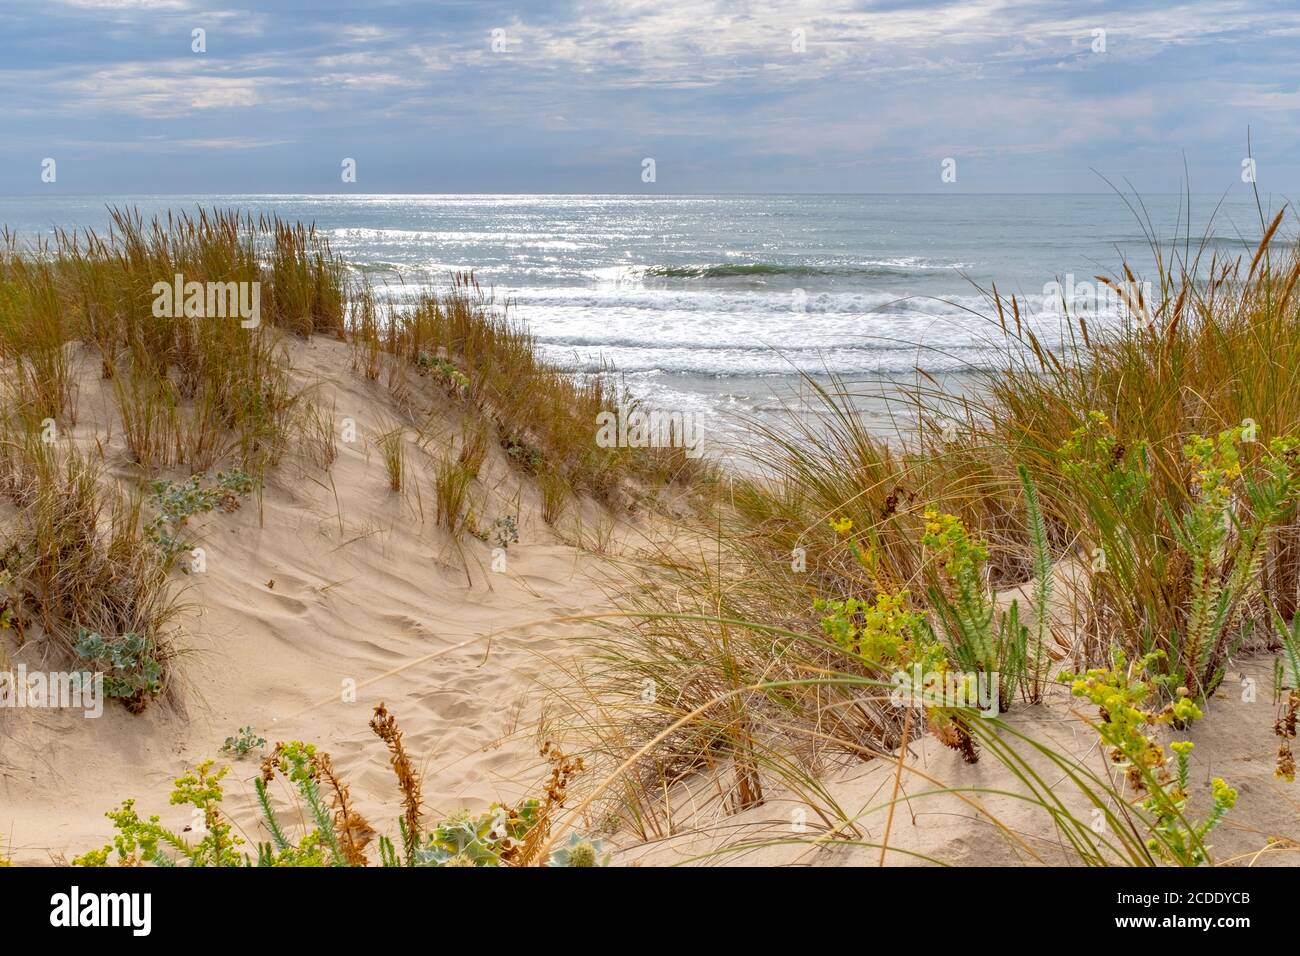 Vagues de l'océan se brisant sur une plage de l'Atlantique vide sur la côte française. Prise d'un petit chemin en été à la fin de l'après-midi Banque D'Images